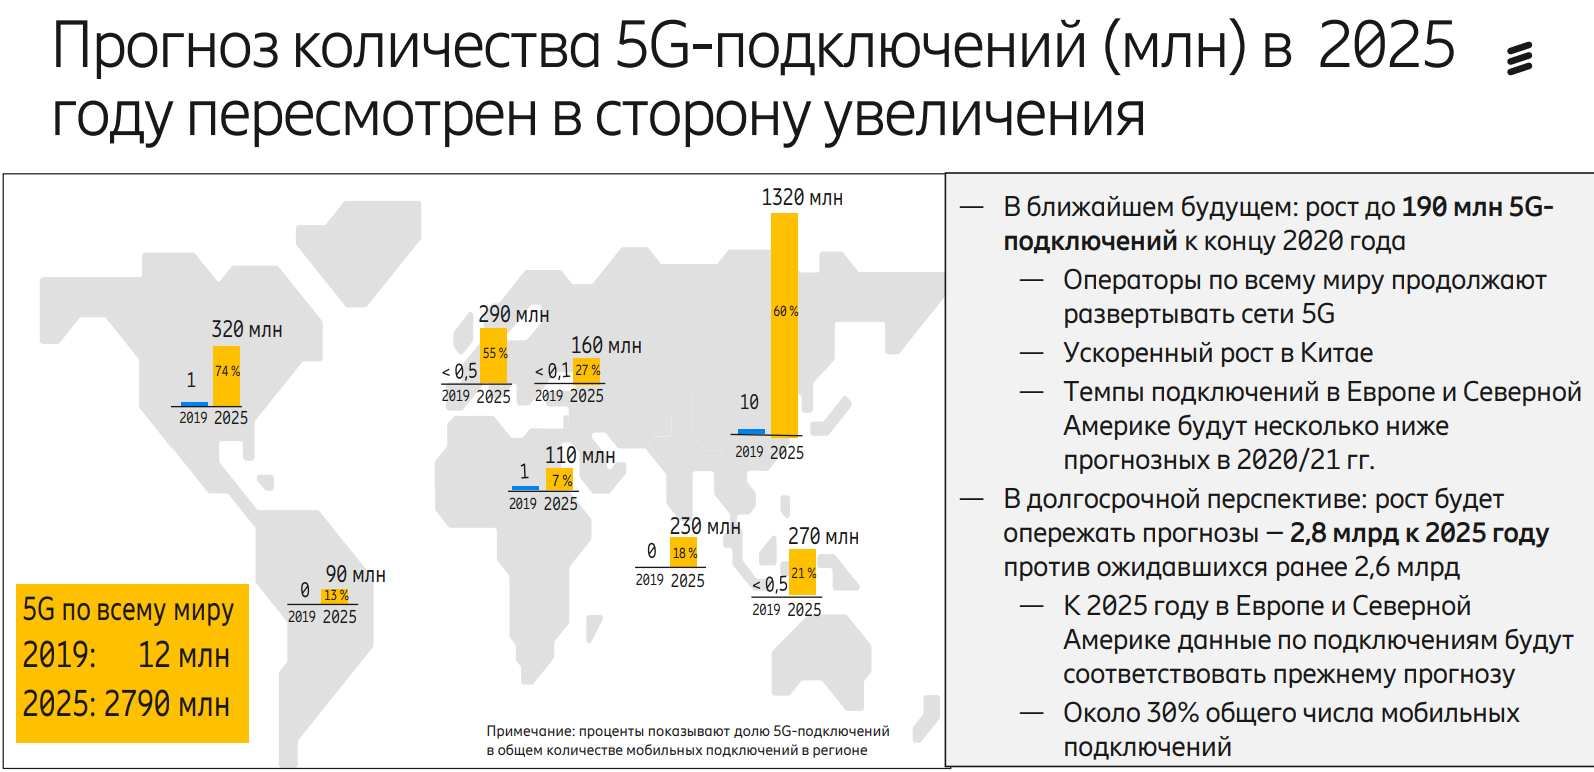 Выгодный отпуск в 2025 году. 5g в мире. Развертывание 5 g в мире. Зона покрытия 5g в мире. Перспективы развития 5 g в России.